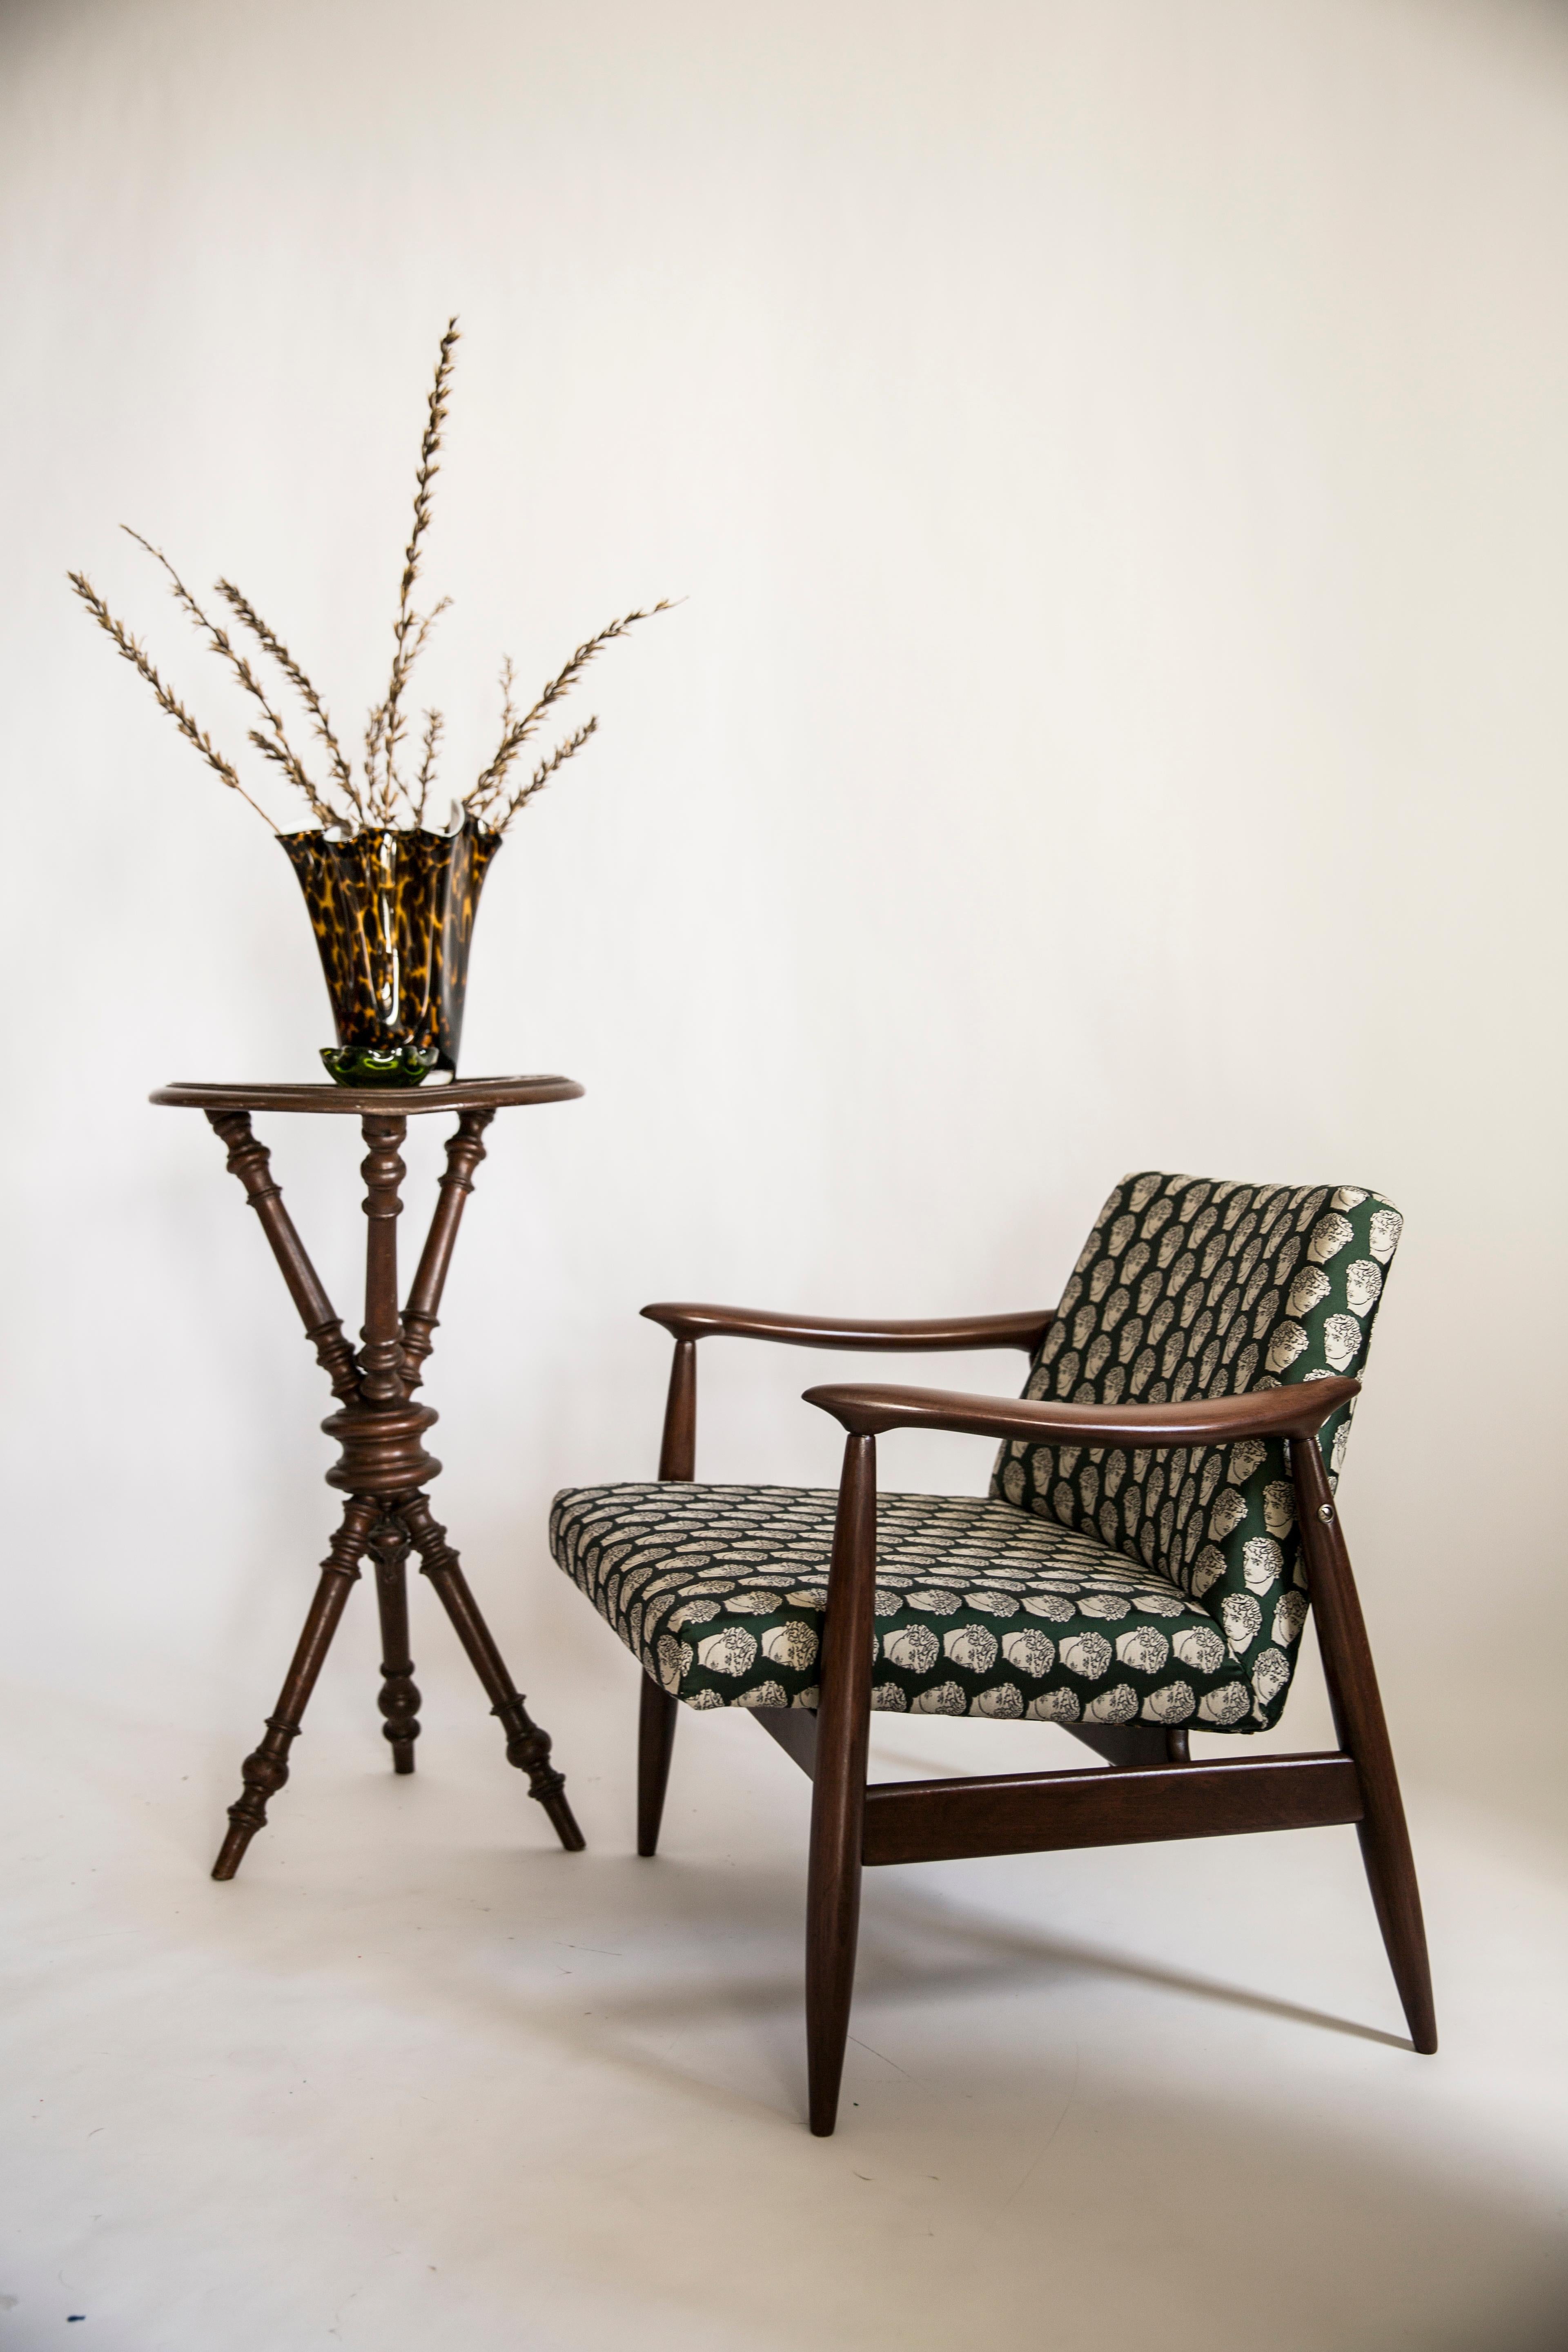 Der GFM-Sessel ist eine Ikone des polnischen Designs der PRL-Zeit.

Der berühmte Sessel wurde 1962 von dem polnischen Innenarchitekten und Möbeldesigner Edmund Homa entworfen. Produziert in der Niederschlesischen Möbelfabrik in Swiebodzice.

Dieses